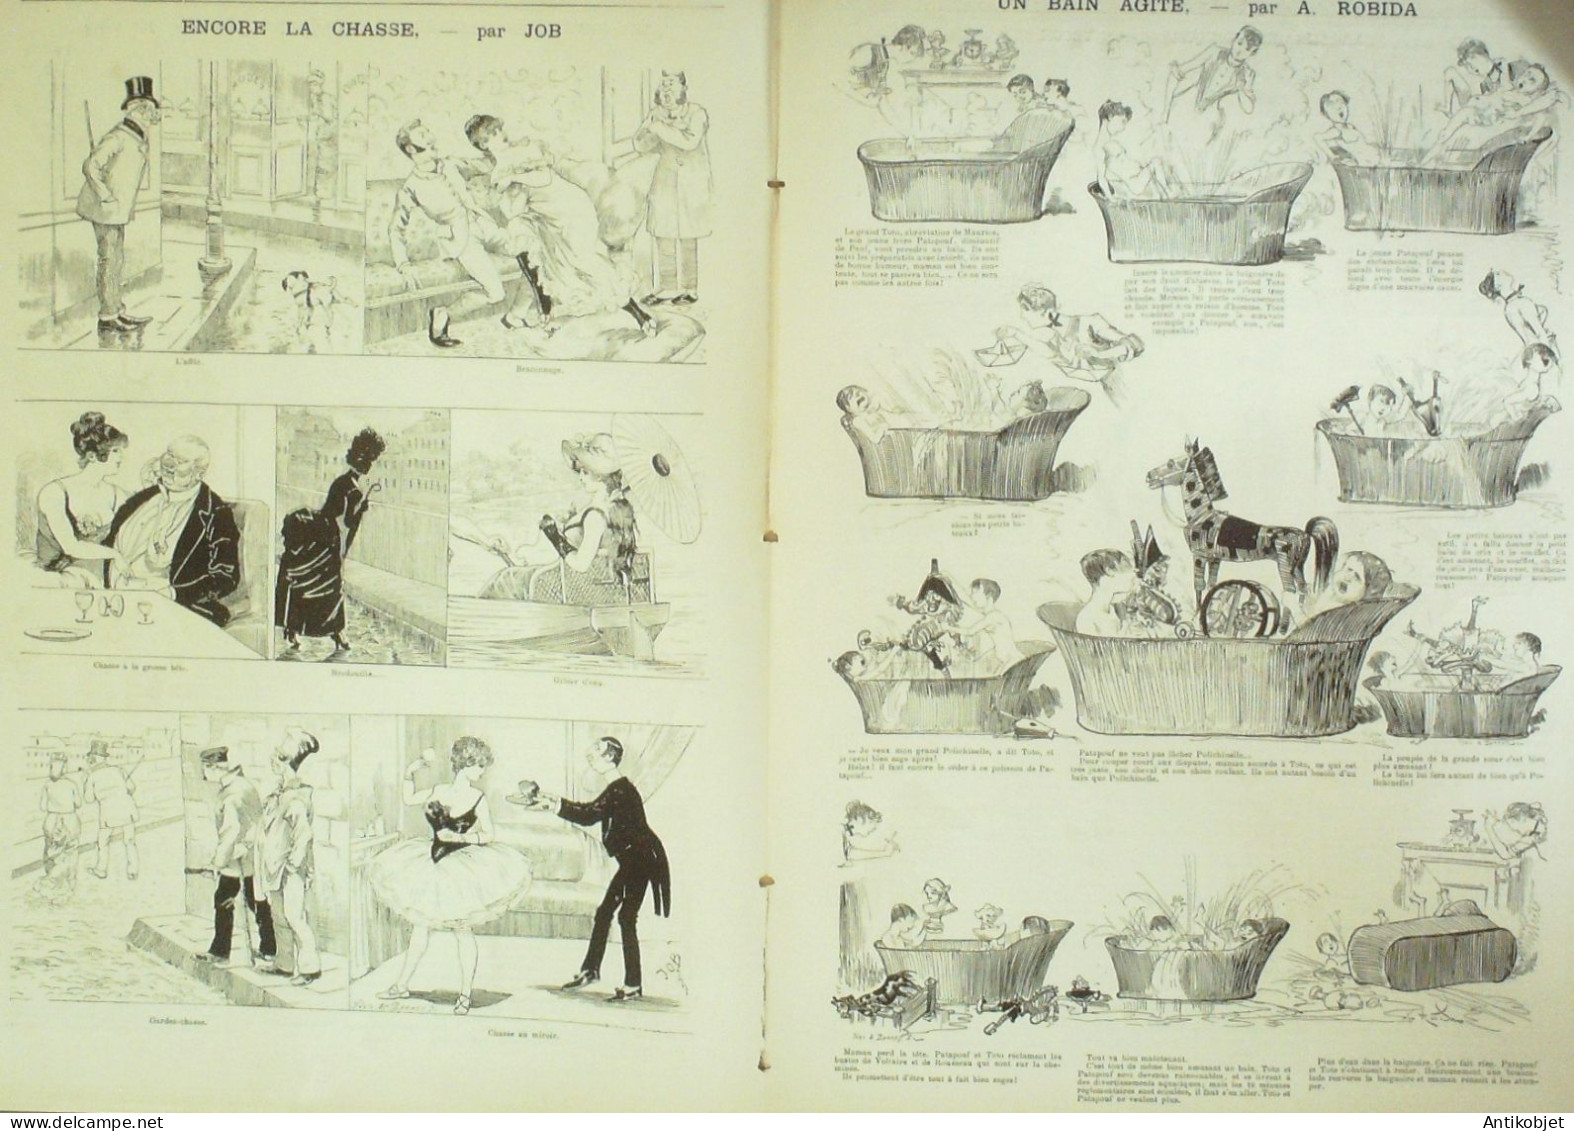 La Caricature 1885 N°299 Réservistes En Manoeuvres Draner Gino Robida Job - Tijdschriften - Voor 1900